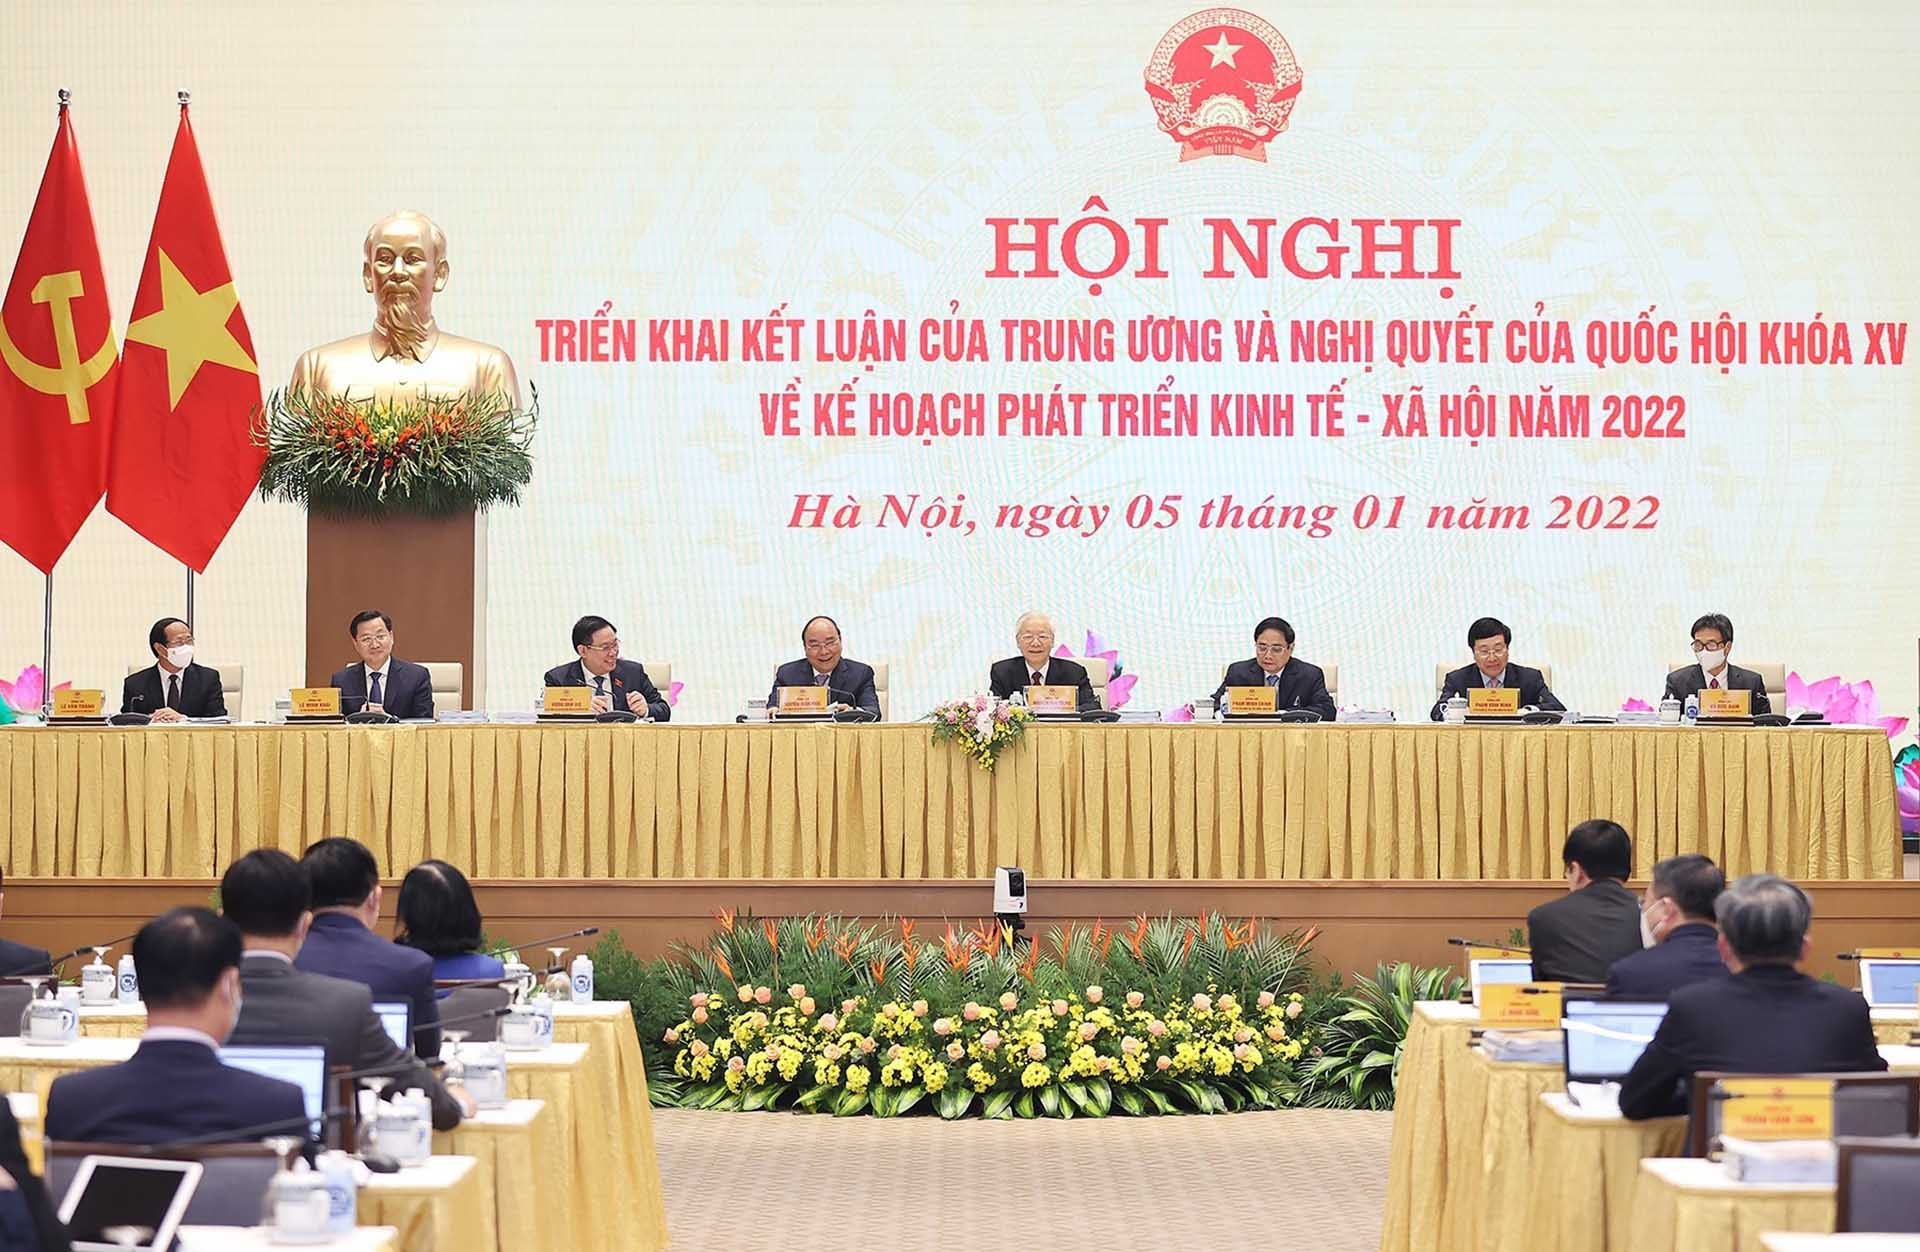 Tổng Bí thư Nguyễn Phú Trọng cùng các lãnh đạo Đảng, Nhà nước chủ trì Hội nghị Chính phủ với các địa phương triển khai kết luận của Trung ương và Nghị quyết của Quốc hội về kế hoạch phát triển kinh tế-xã hội năm 2022. (Nguồn: TTXVN)